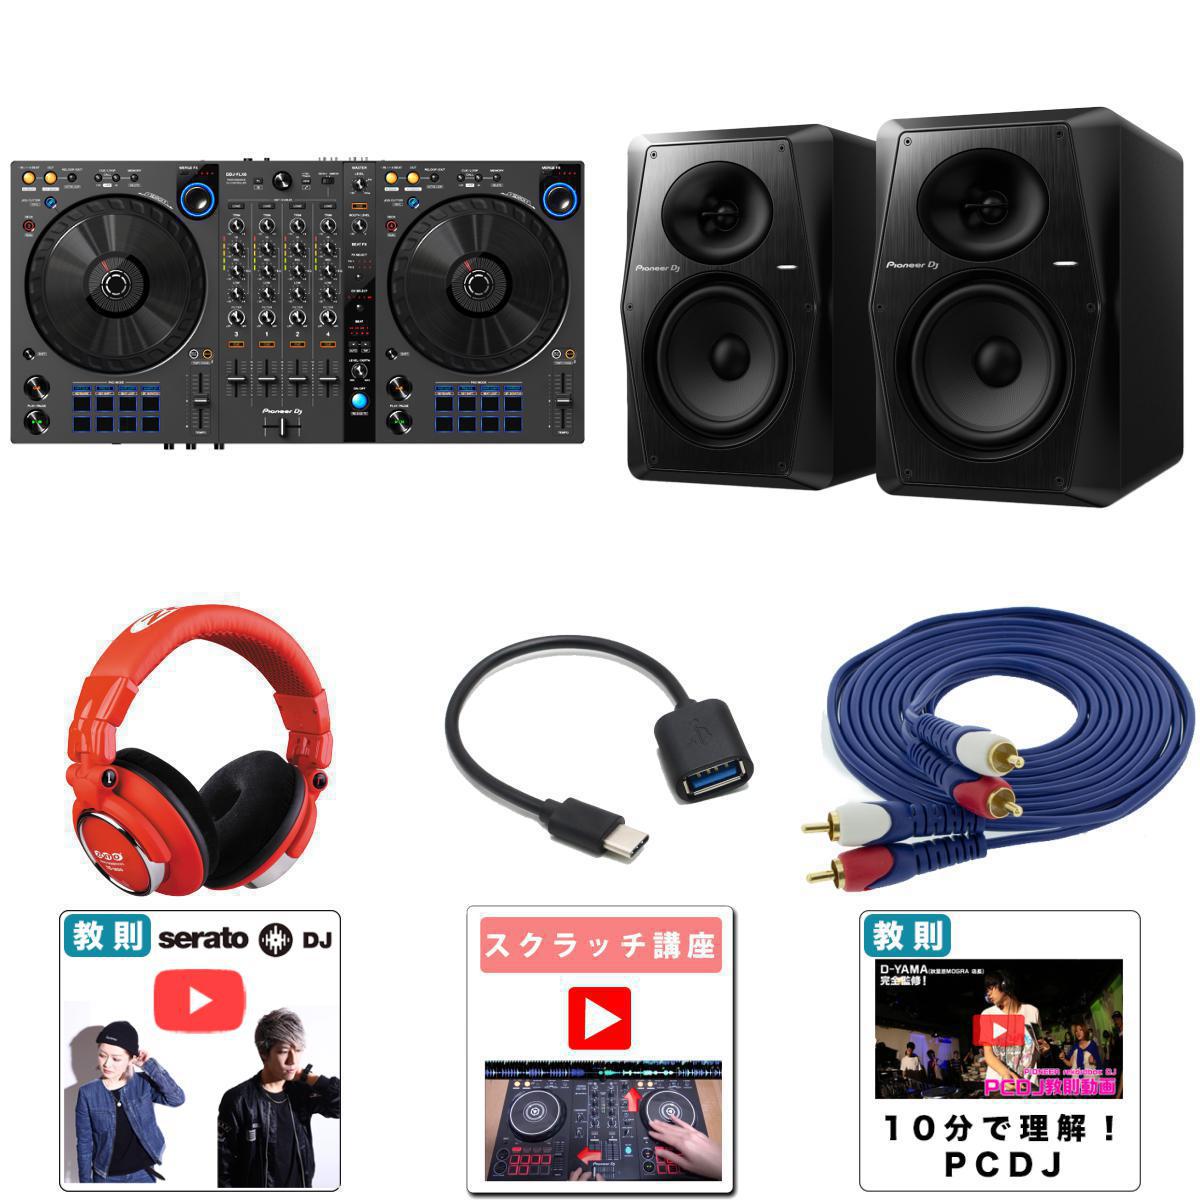 【高音質VM-70Pioneer DJスピーカーセット】Pioneer DJ(パイオニア) / DDJ-FLX6-GT 【rekordbox・Serato DJ Pro対応】 4ch PCDJコントローラーー 10大特典セット